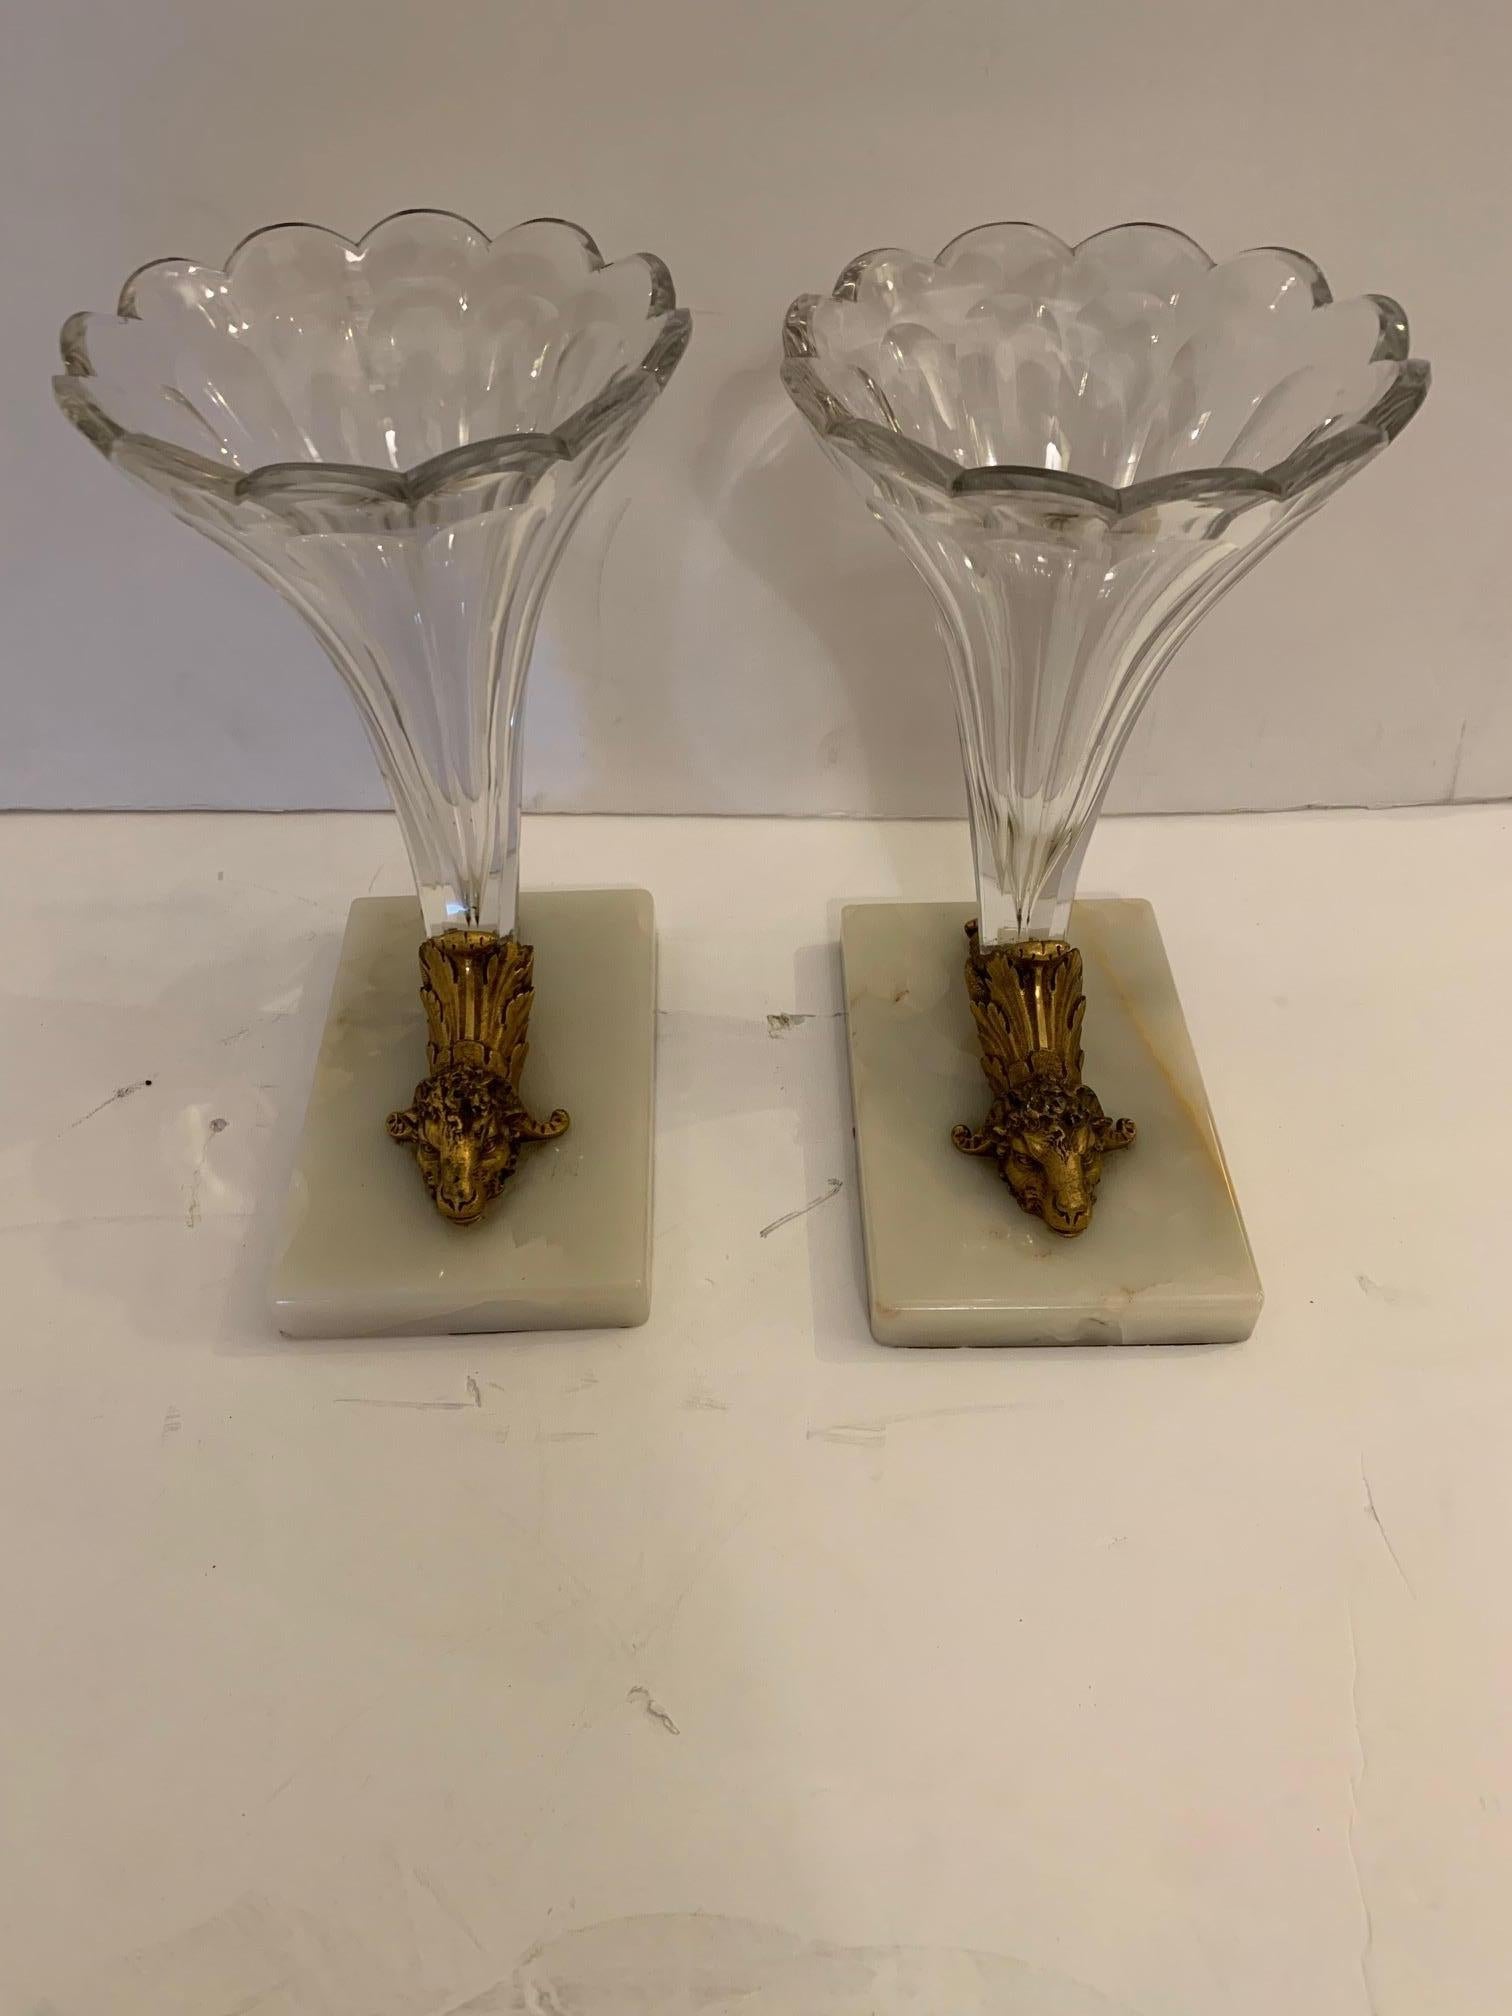 Ein schönes Paar von geschliffenem Glas Füllhorn oder Garnitur mit weißem Marmor Basen und atemberaubende Bronze dekorative Widderköpfe.